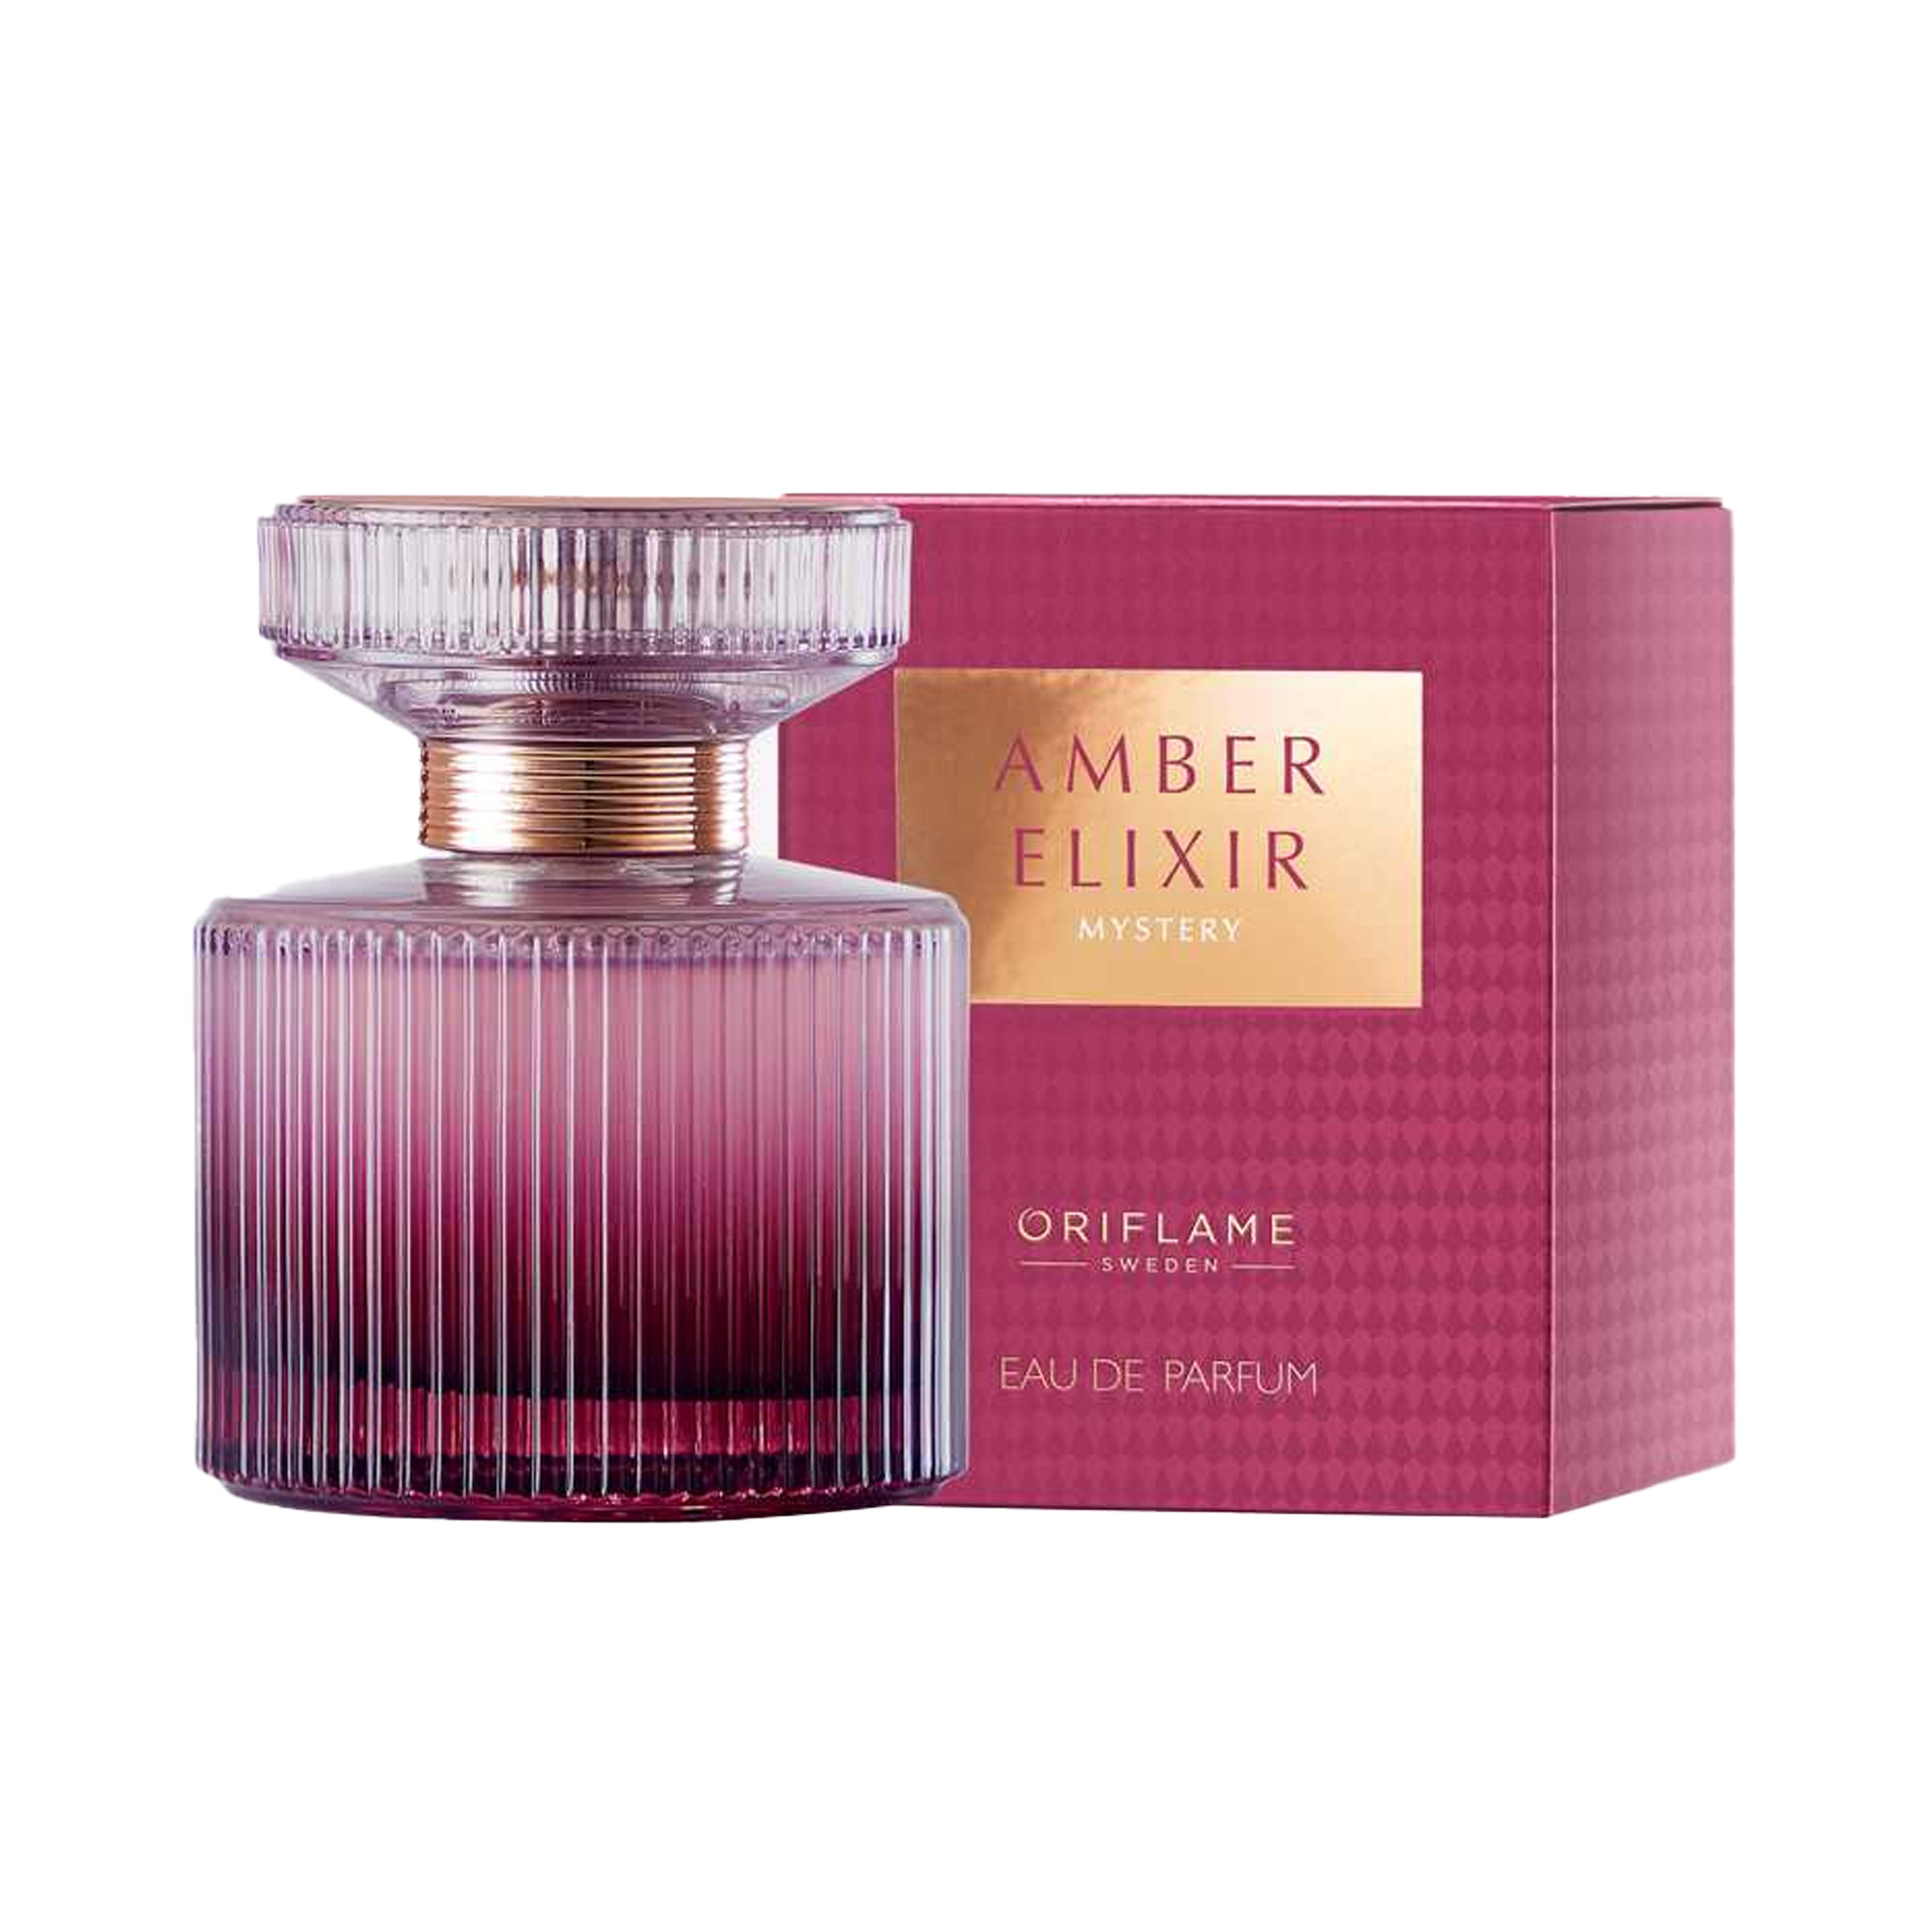 AMBER ELIXIR Eau de Parfum Amber Elixir Mystery